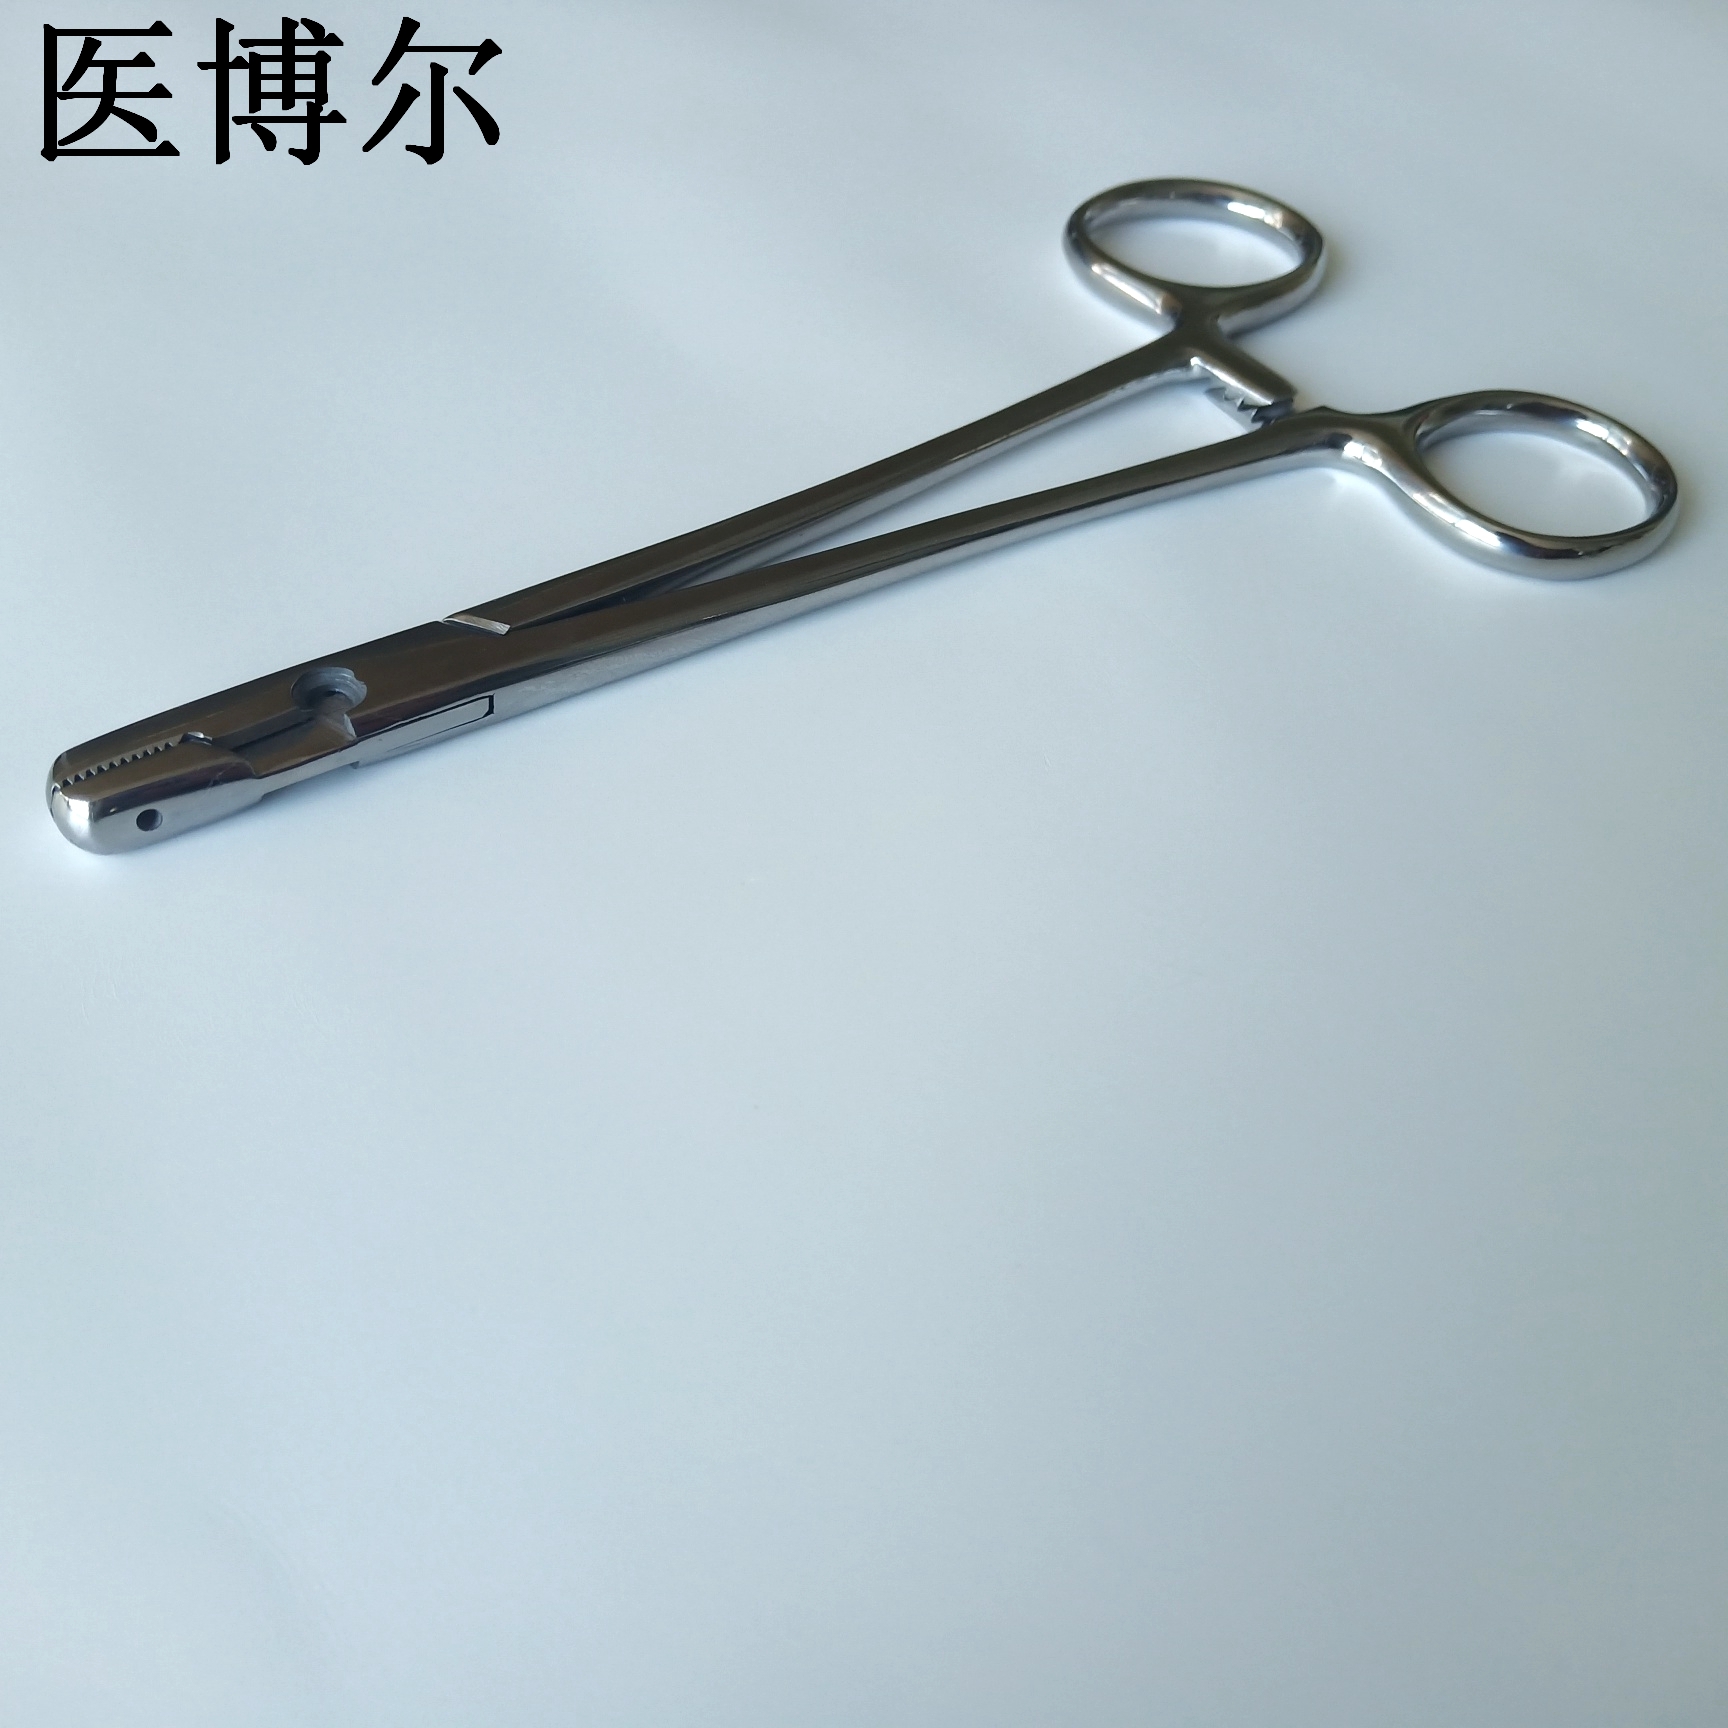 16cm钢丝钳 (4)_看图王.jpg